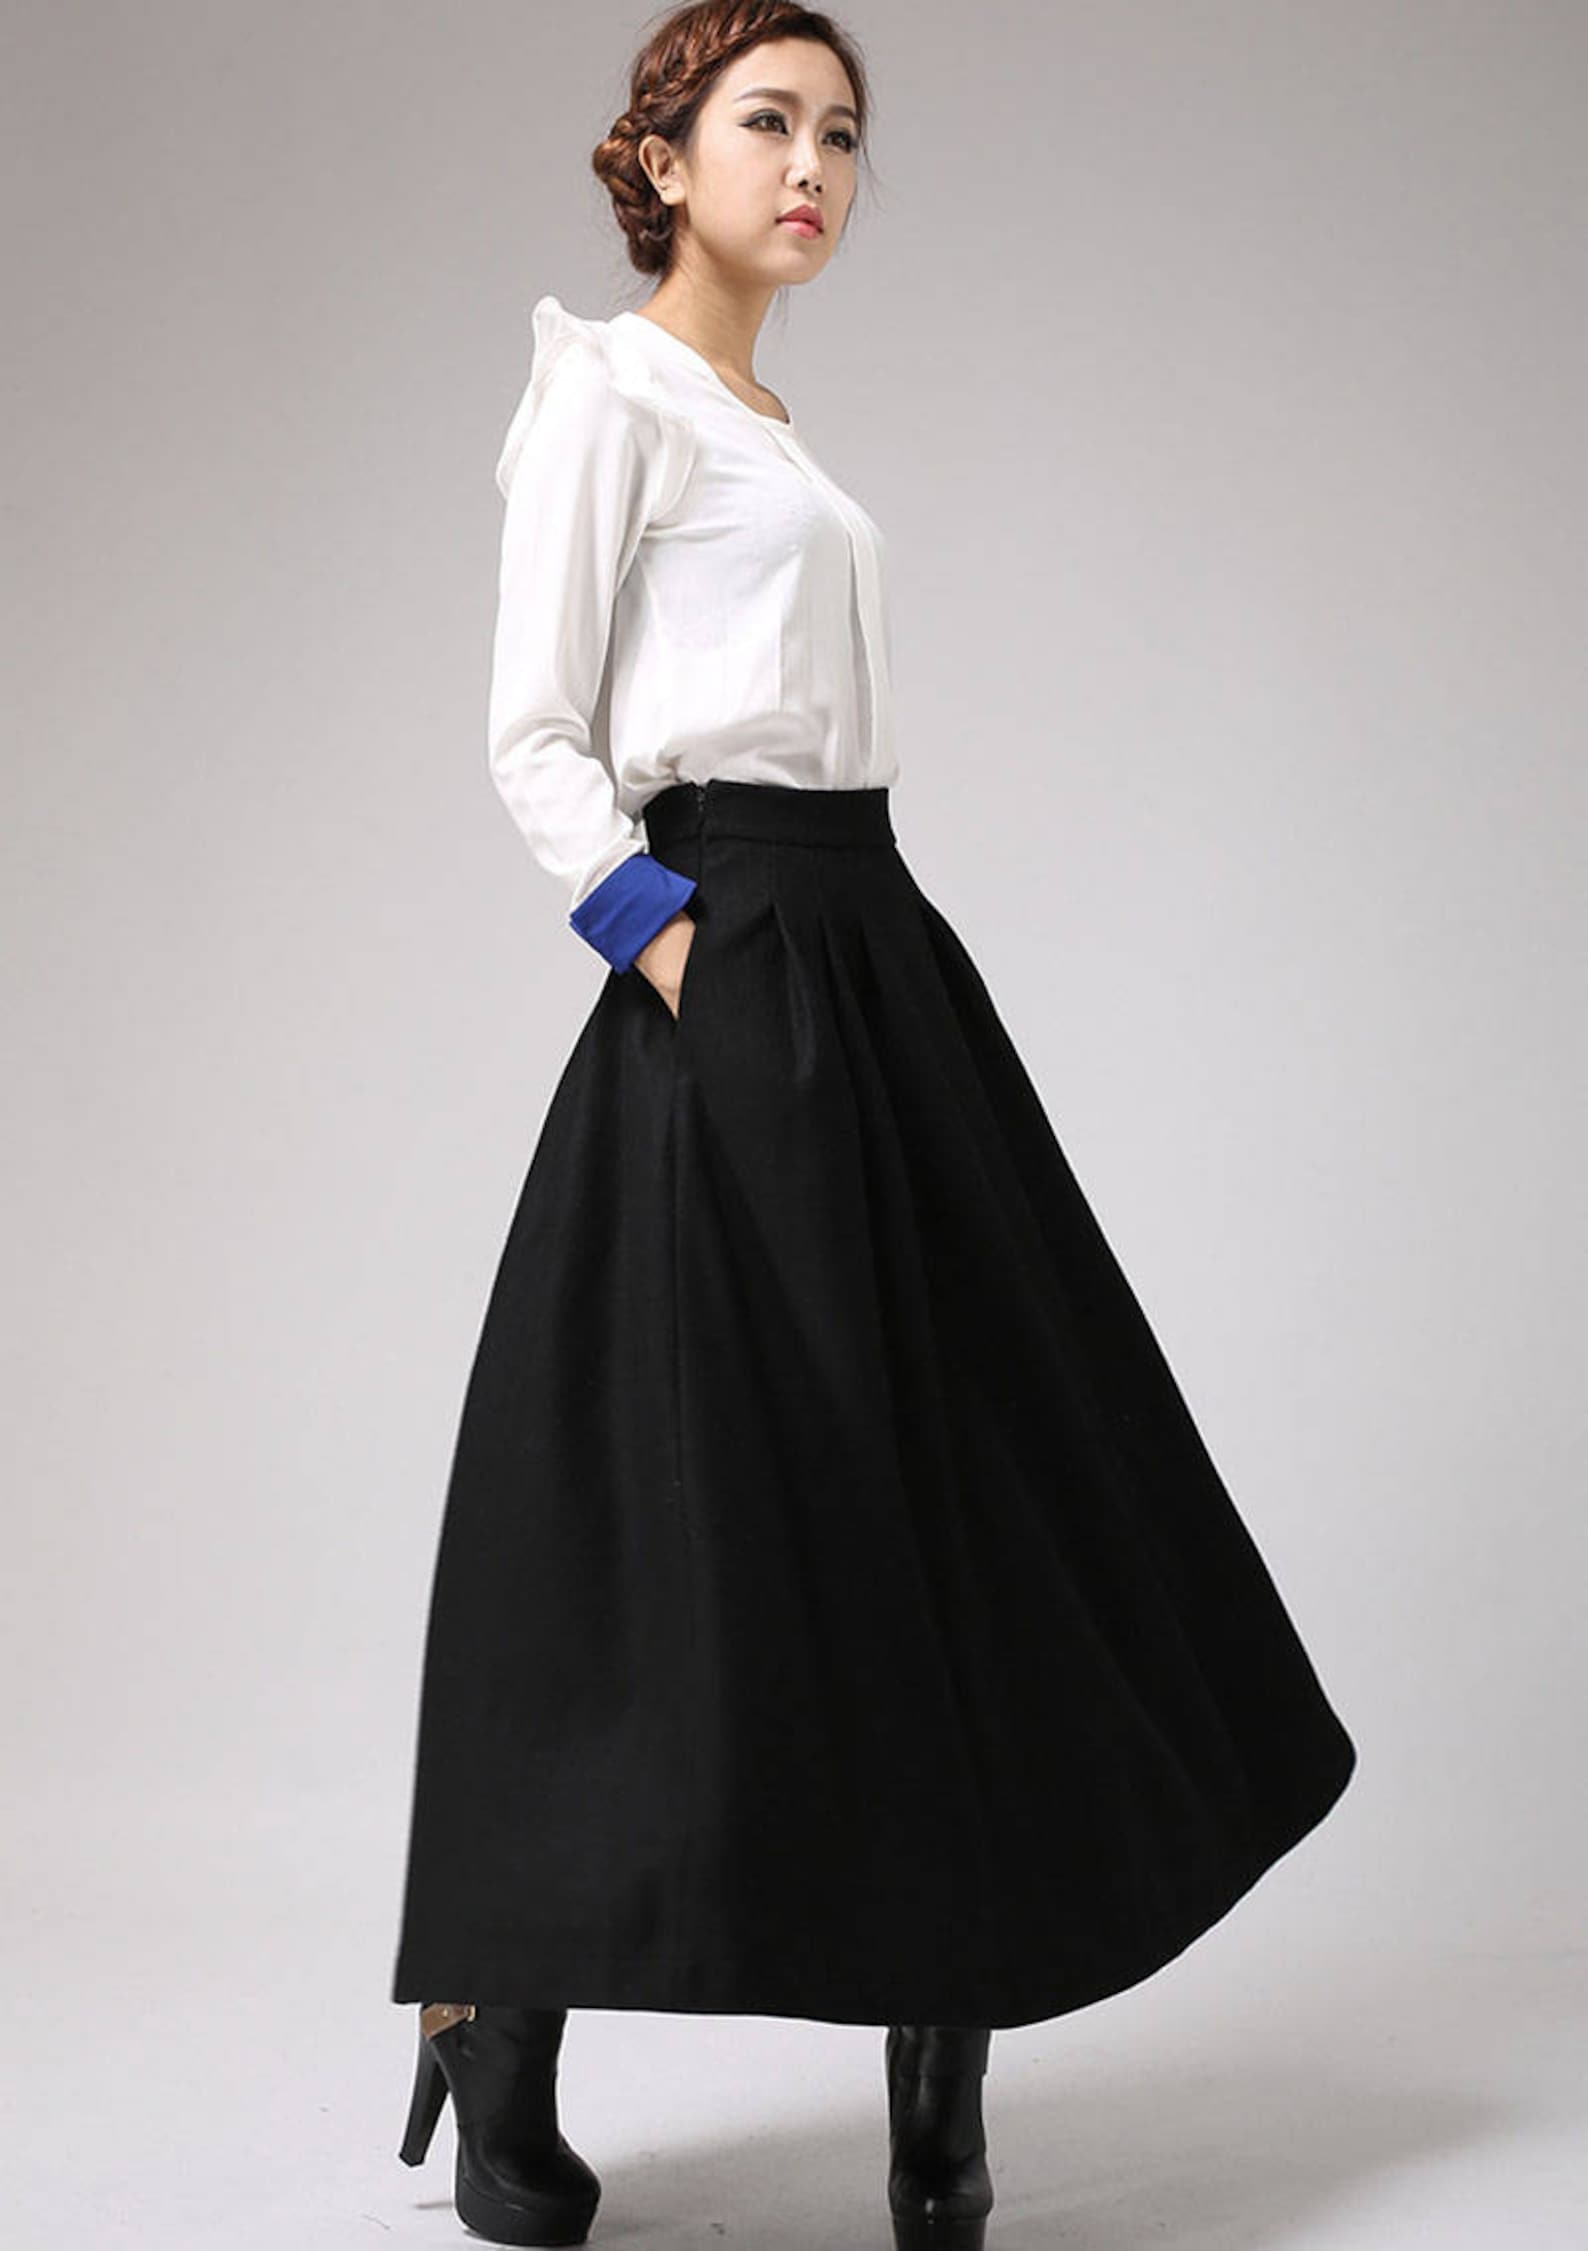 Black wool skirt maxi skirt winter skirt pleated skirt | Etsy